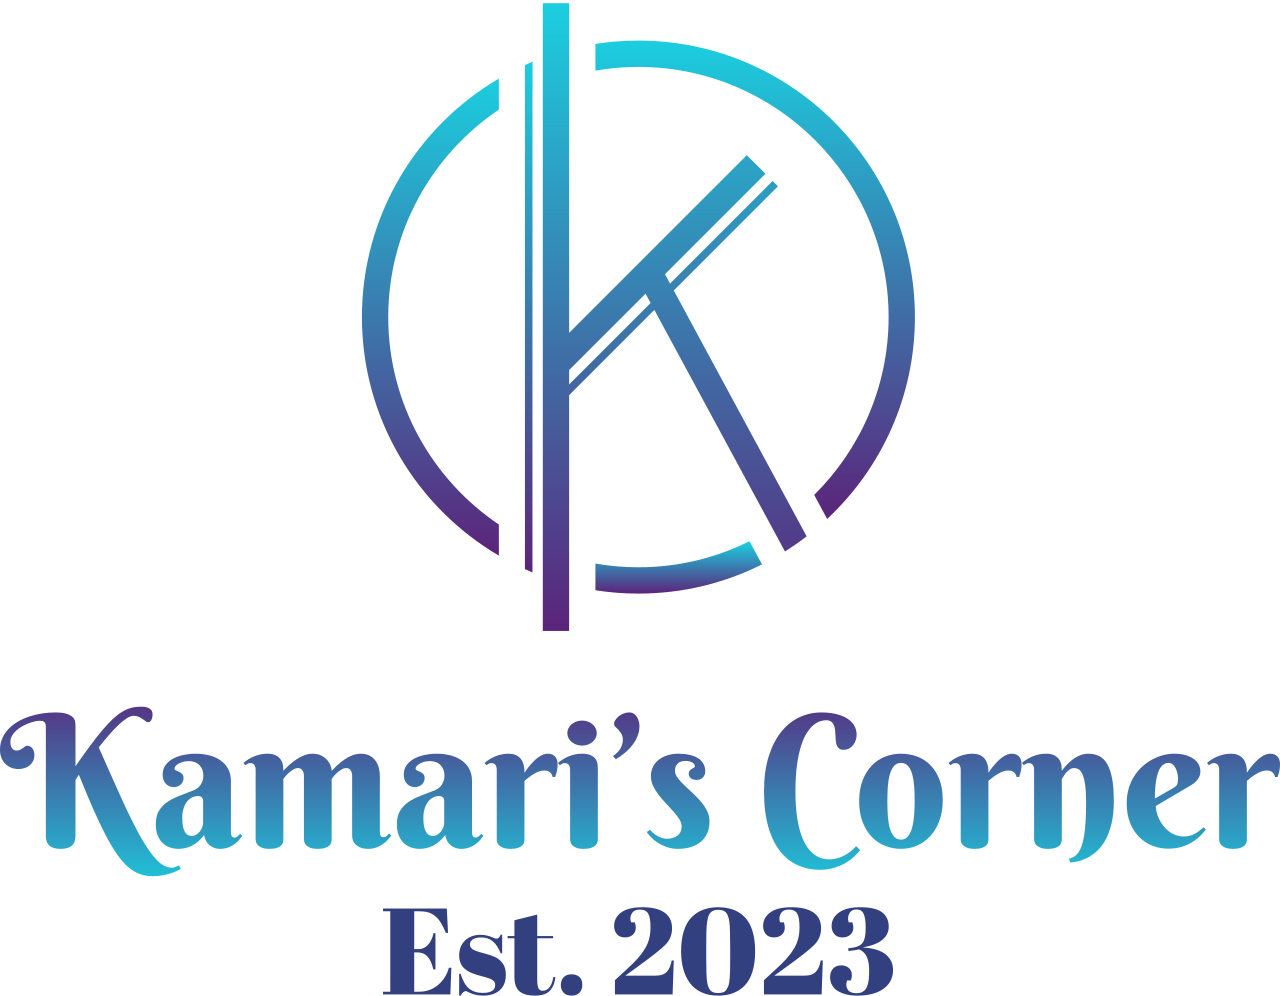 Kamari’s Corner's web page